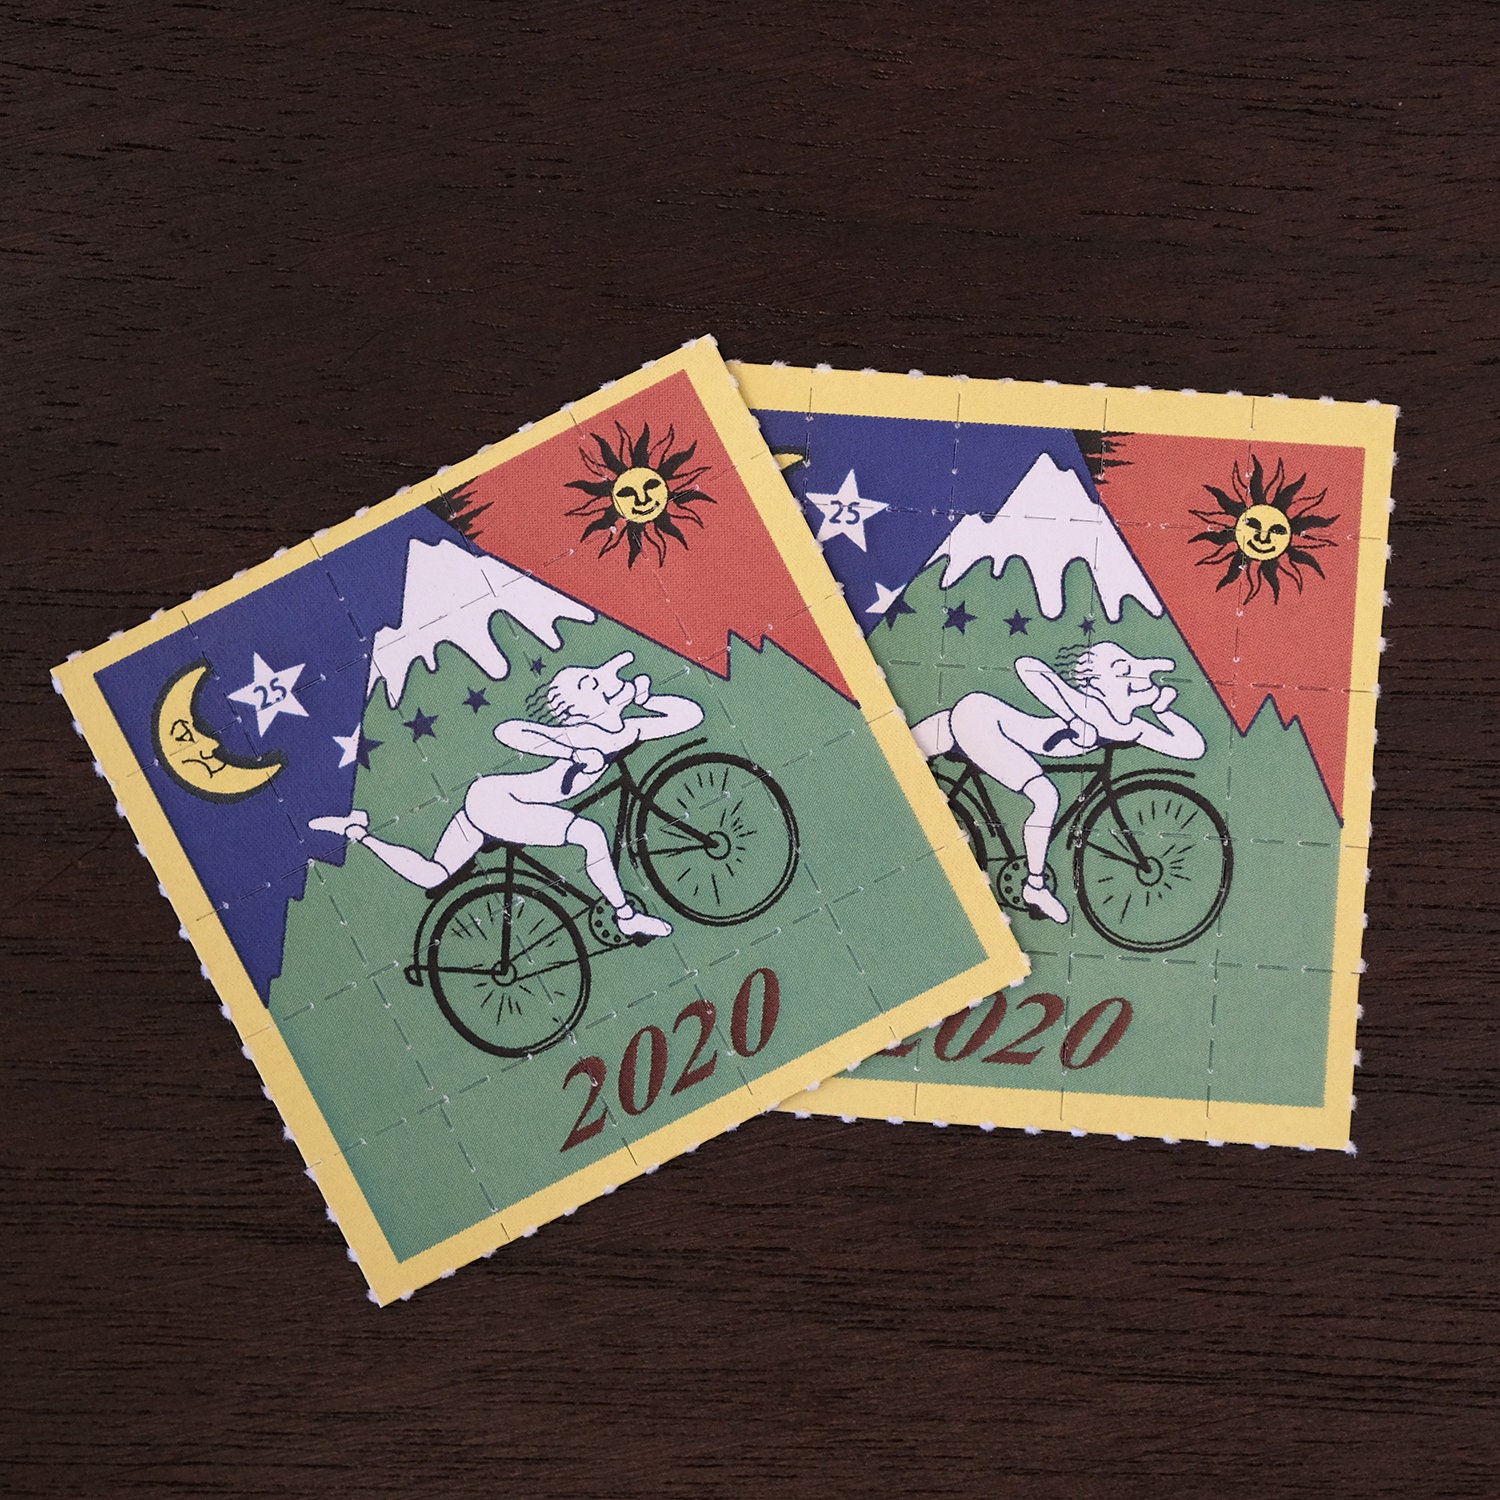 Pappemagnet Bicycle Day grüne Radtour 1943 Albert Hofmann LSD Vintage Magnet 